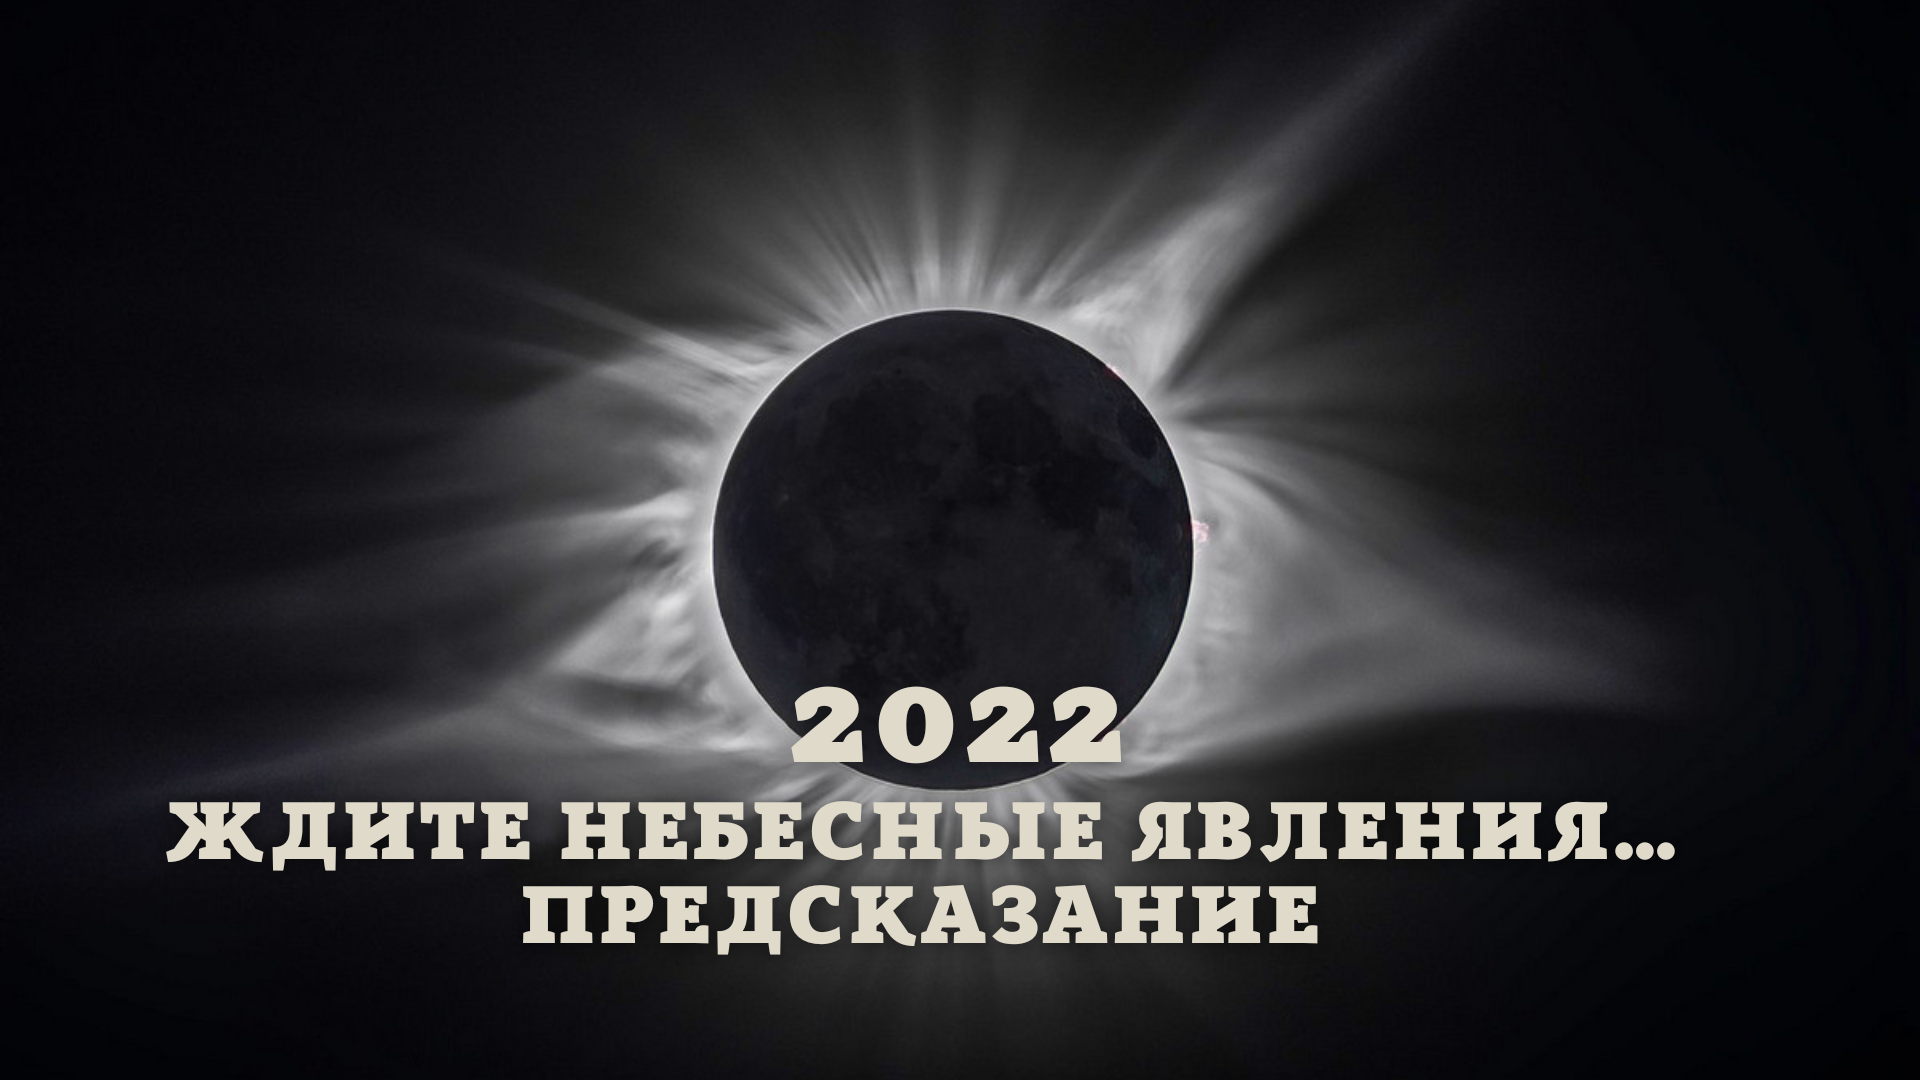 Предсказания на март 2024 для россии